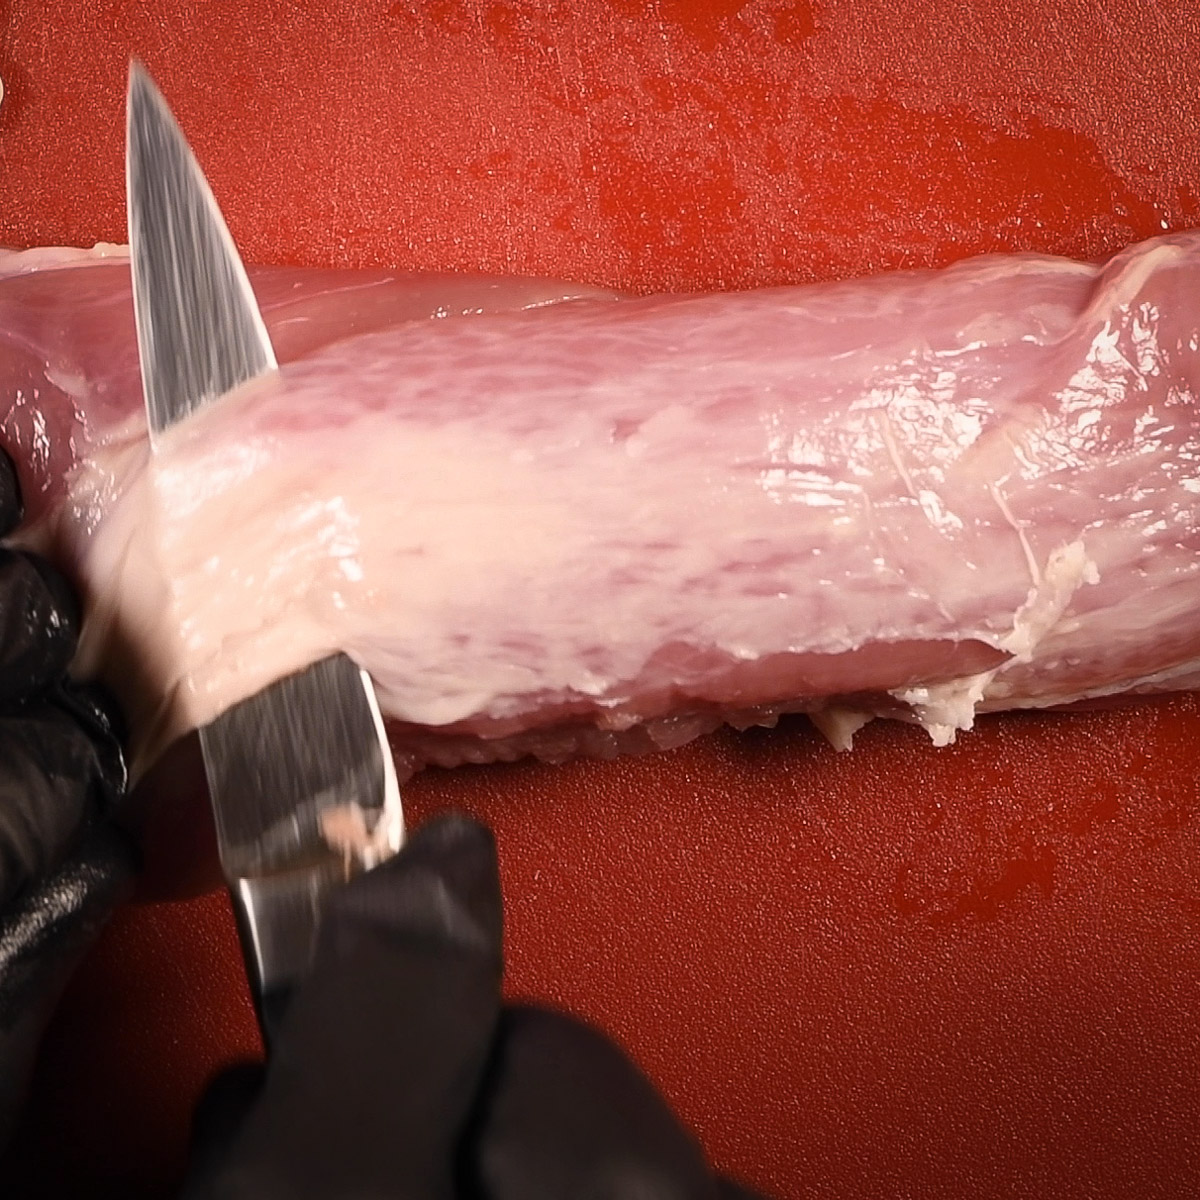 Trim the excess fat from the pork tenderloin.